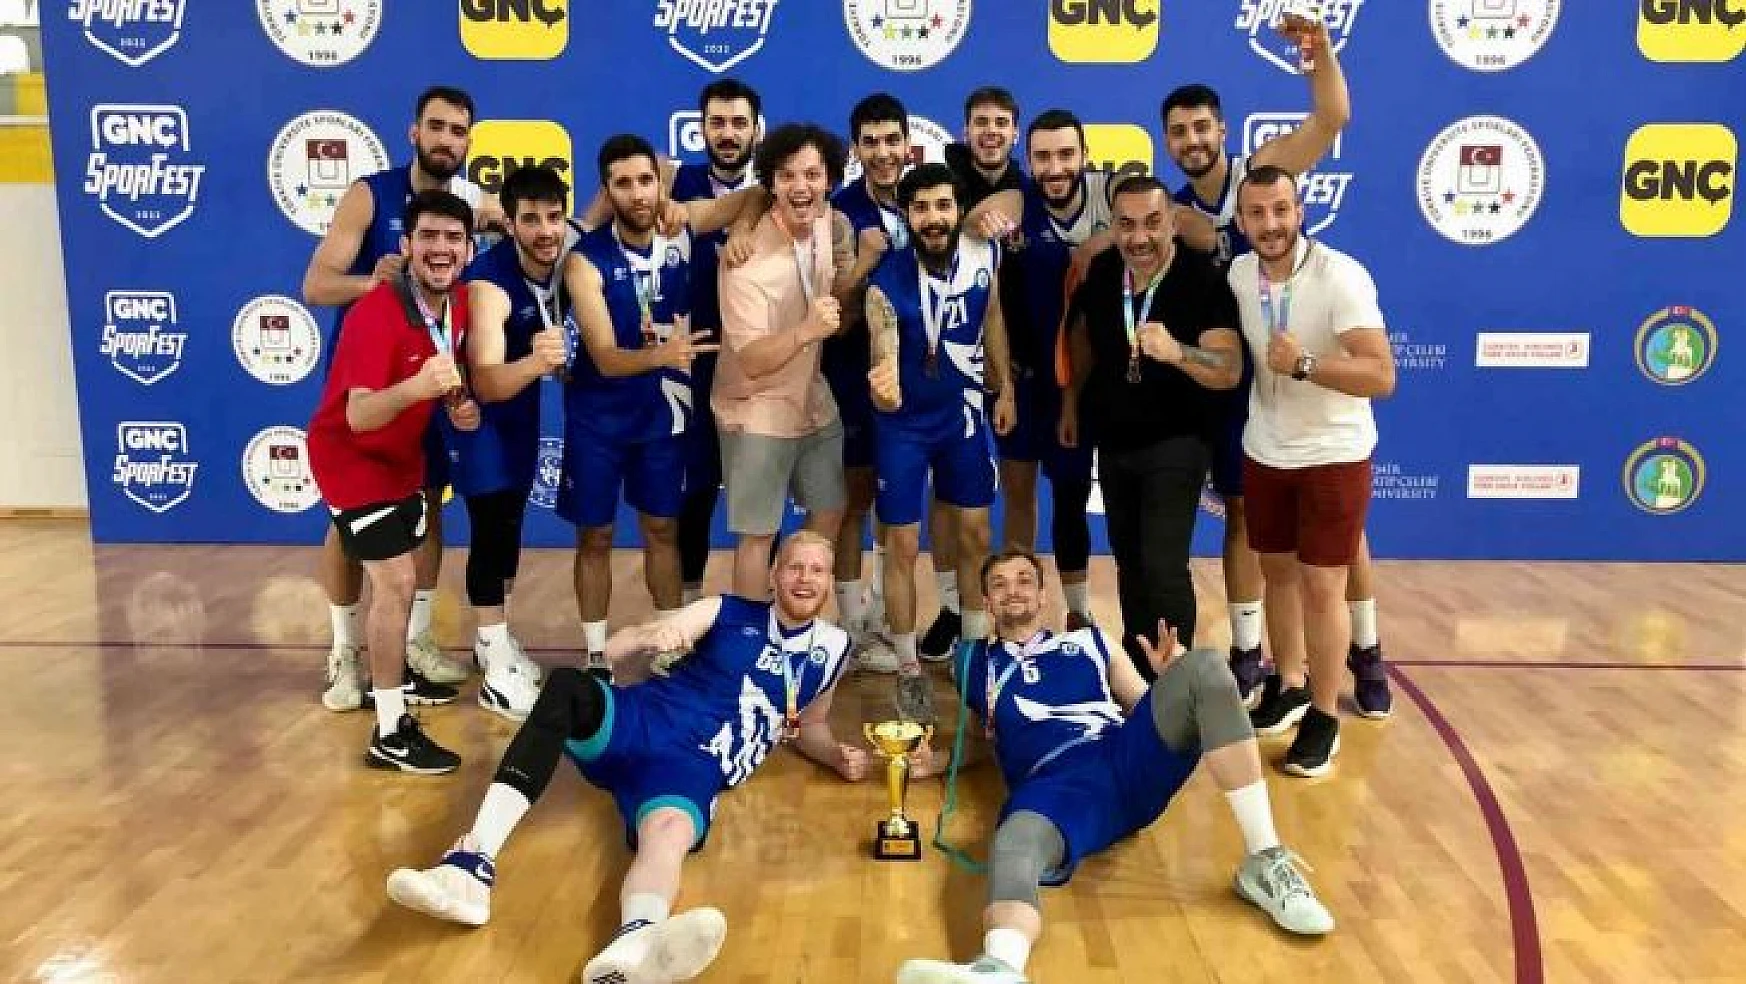 ADÜ Erkek Basketbol Takımı Türkiye üçüncüsü oldu